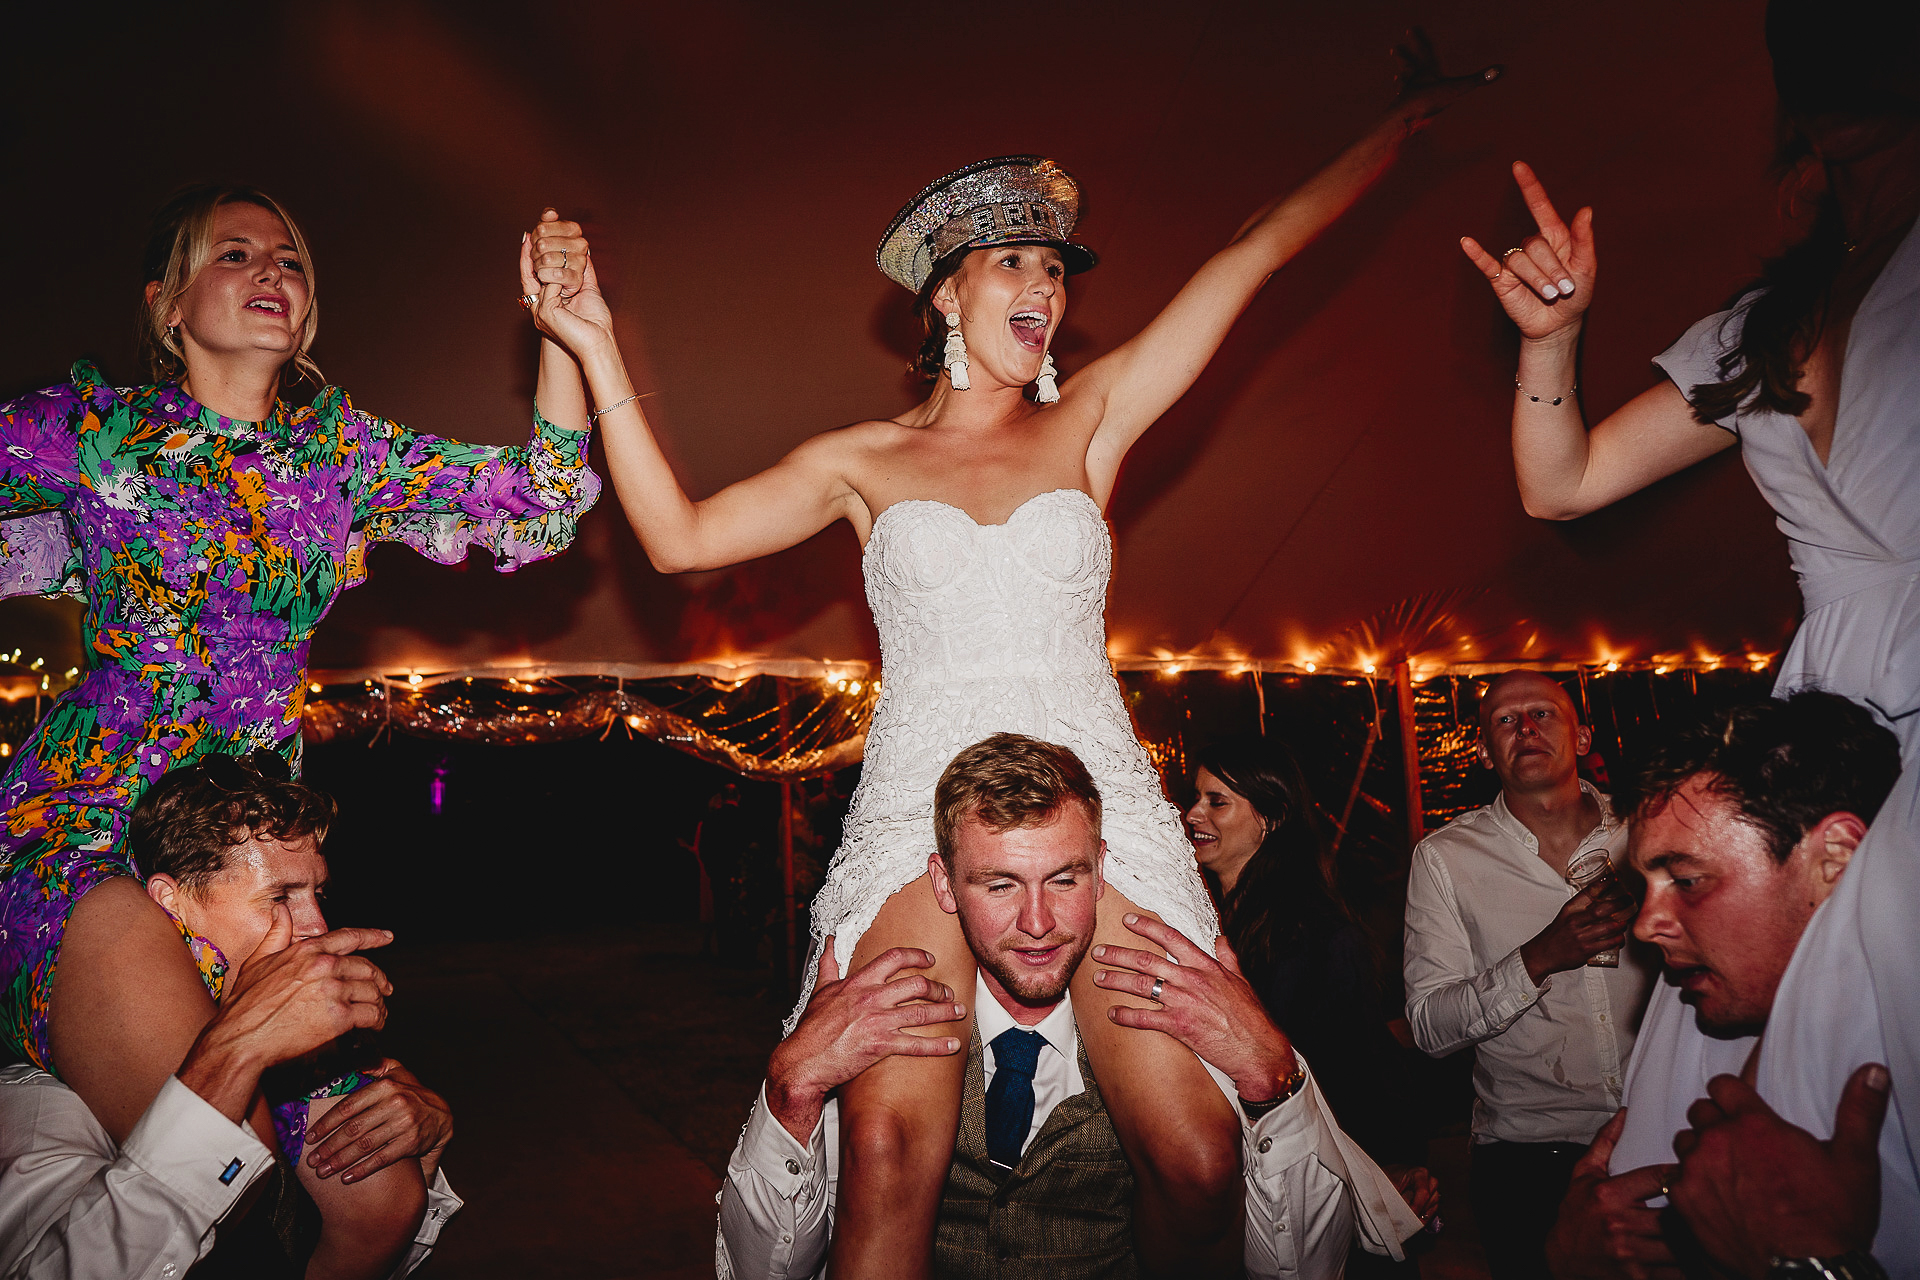 Bride and wedding guests dancing on men's shoulders